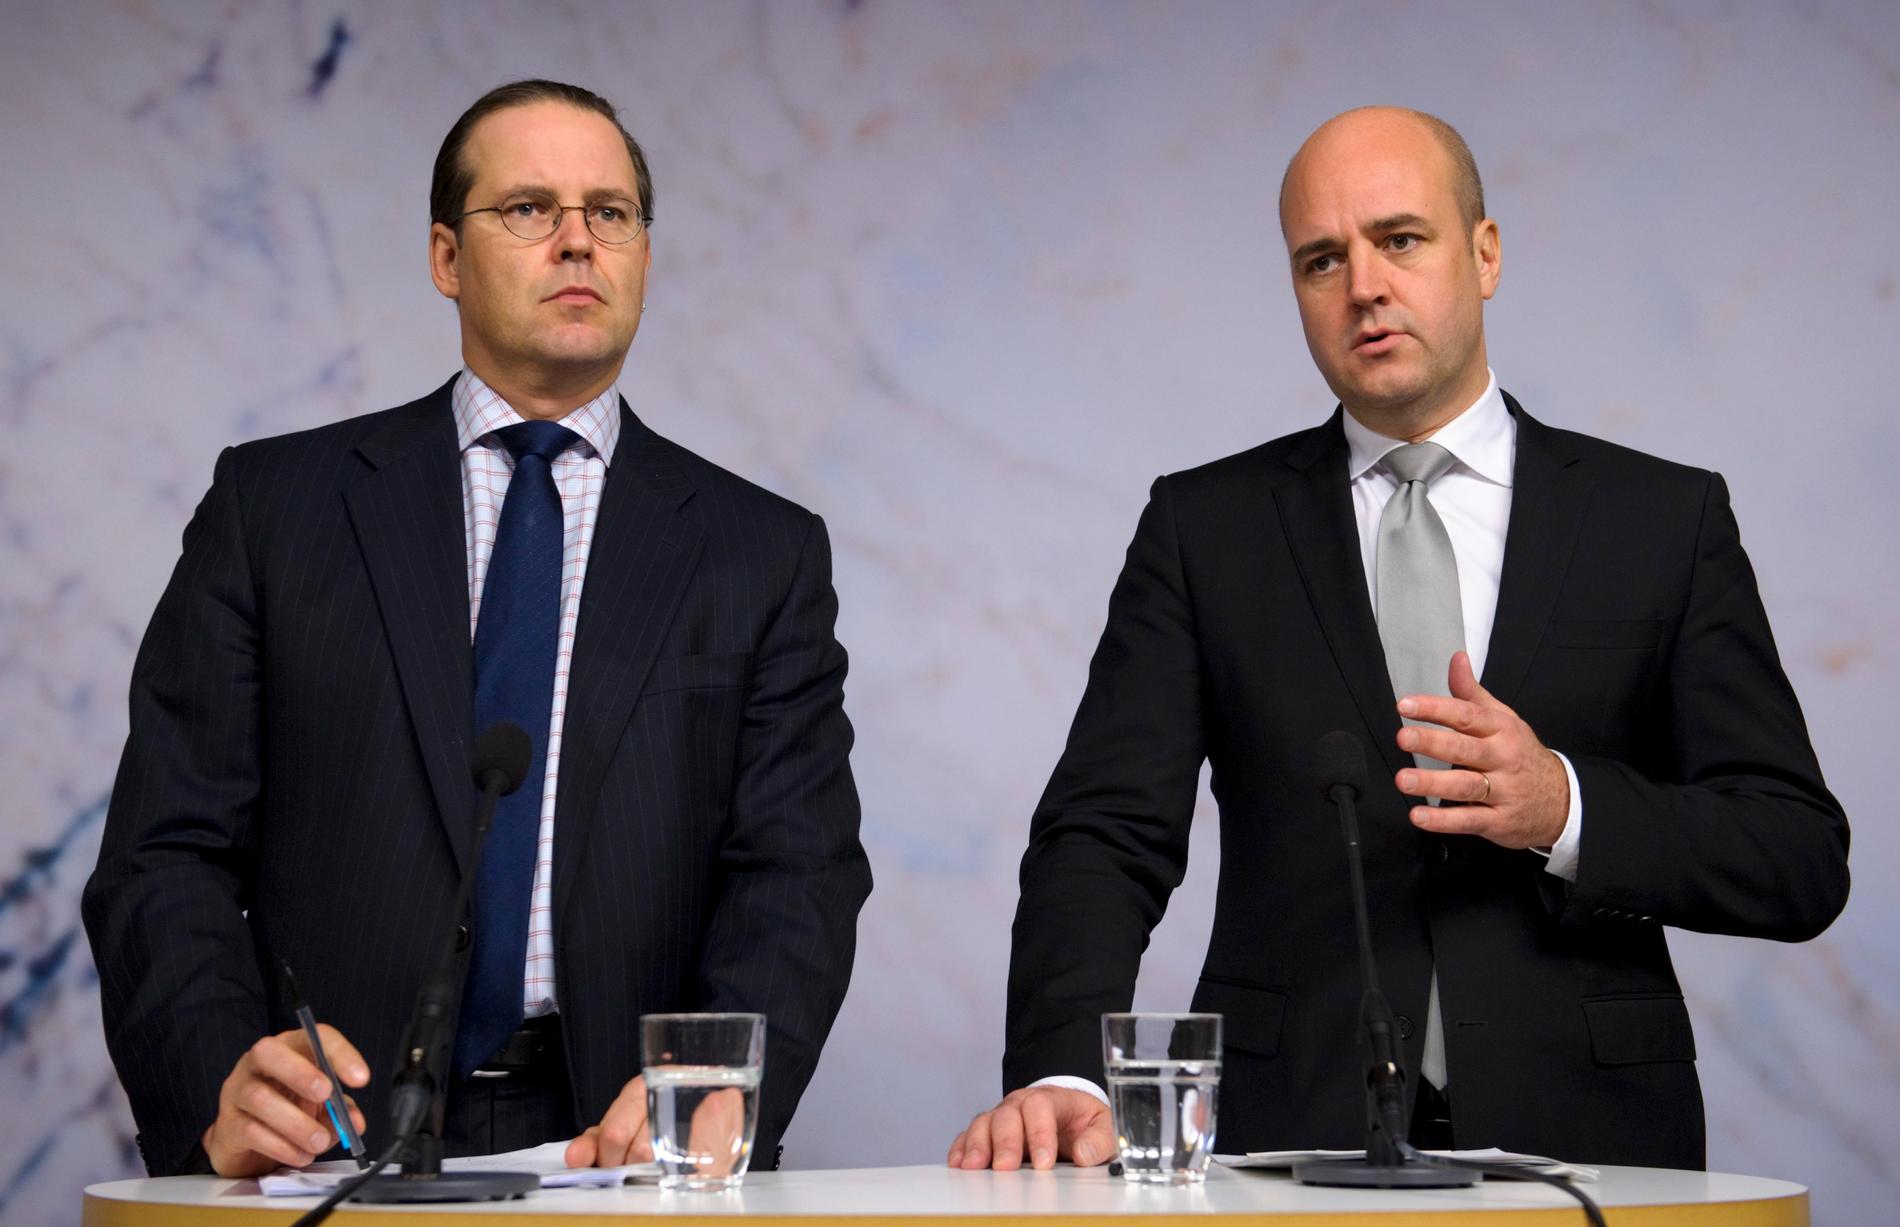 Anders Borg och Fredrik Reinfeldt började efter valförlusten 2014 sälja sina ”råd” till högstbjudande. 